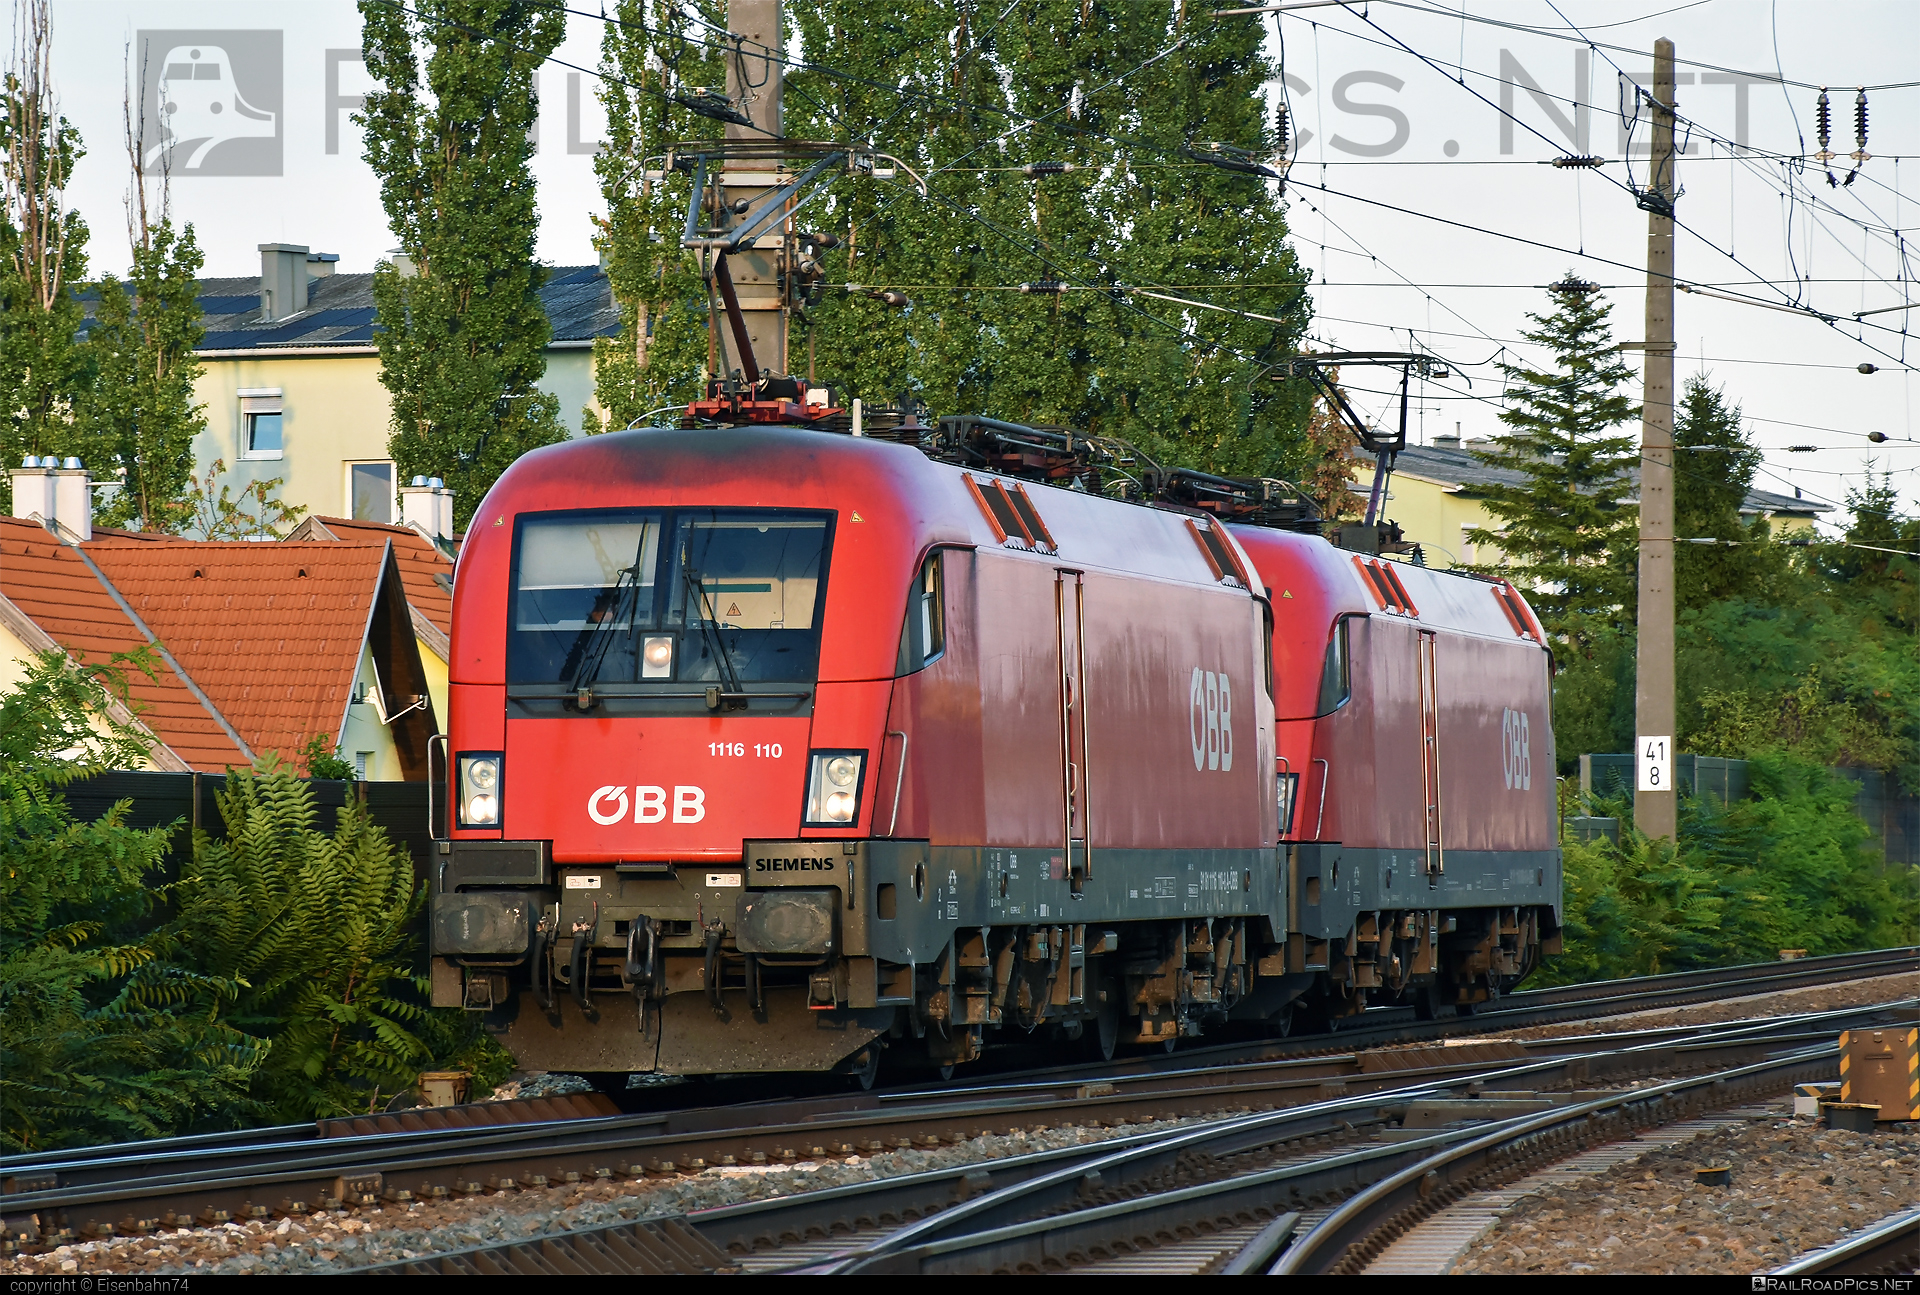 Siemens ES 64 U2 - 1116 110 operated by Österreichische Bundesbahnen #es64 #es64u2 #eurosprinter #obb #osterreichischebundesbahnen #siemens #siemensEs64 #siemensEs64u2 #siemenstaurus #taurus #tauruslocomotive